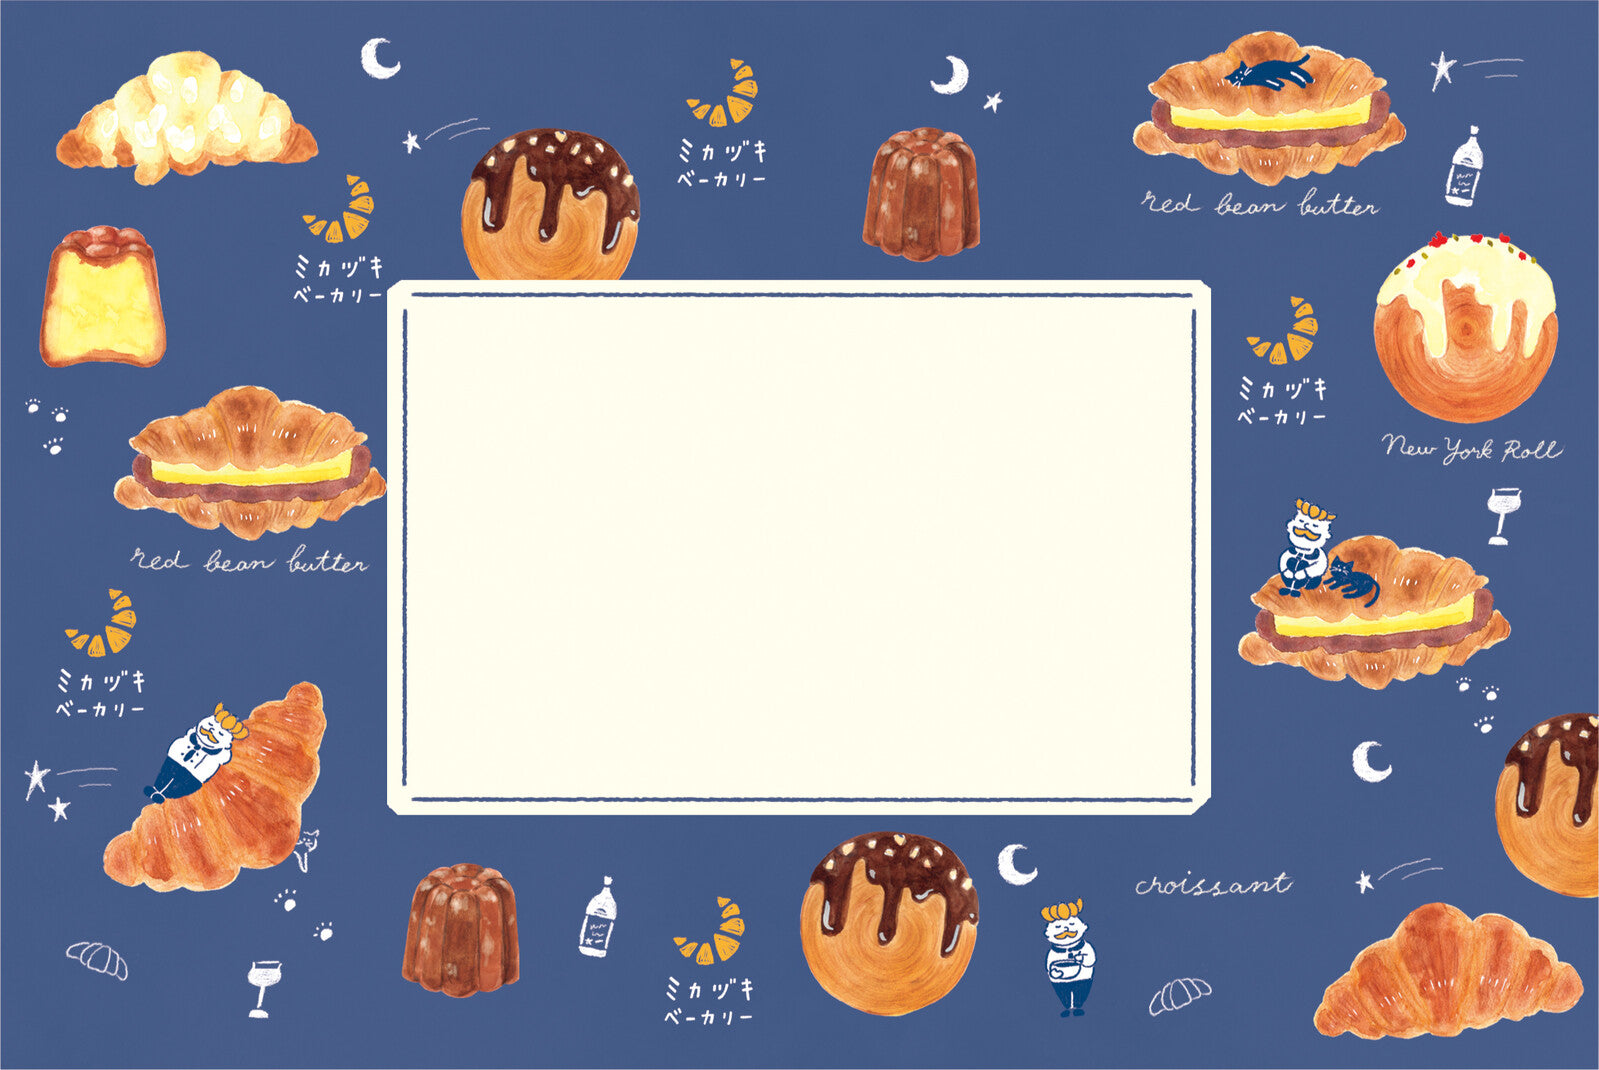 Furukawashiko Bread Town Letter Set - Mikazuki Bakery